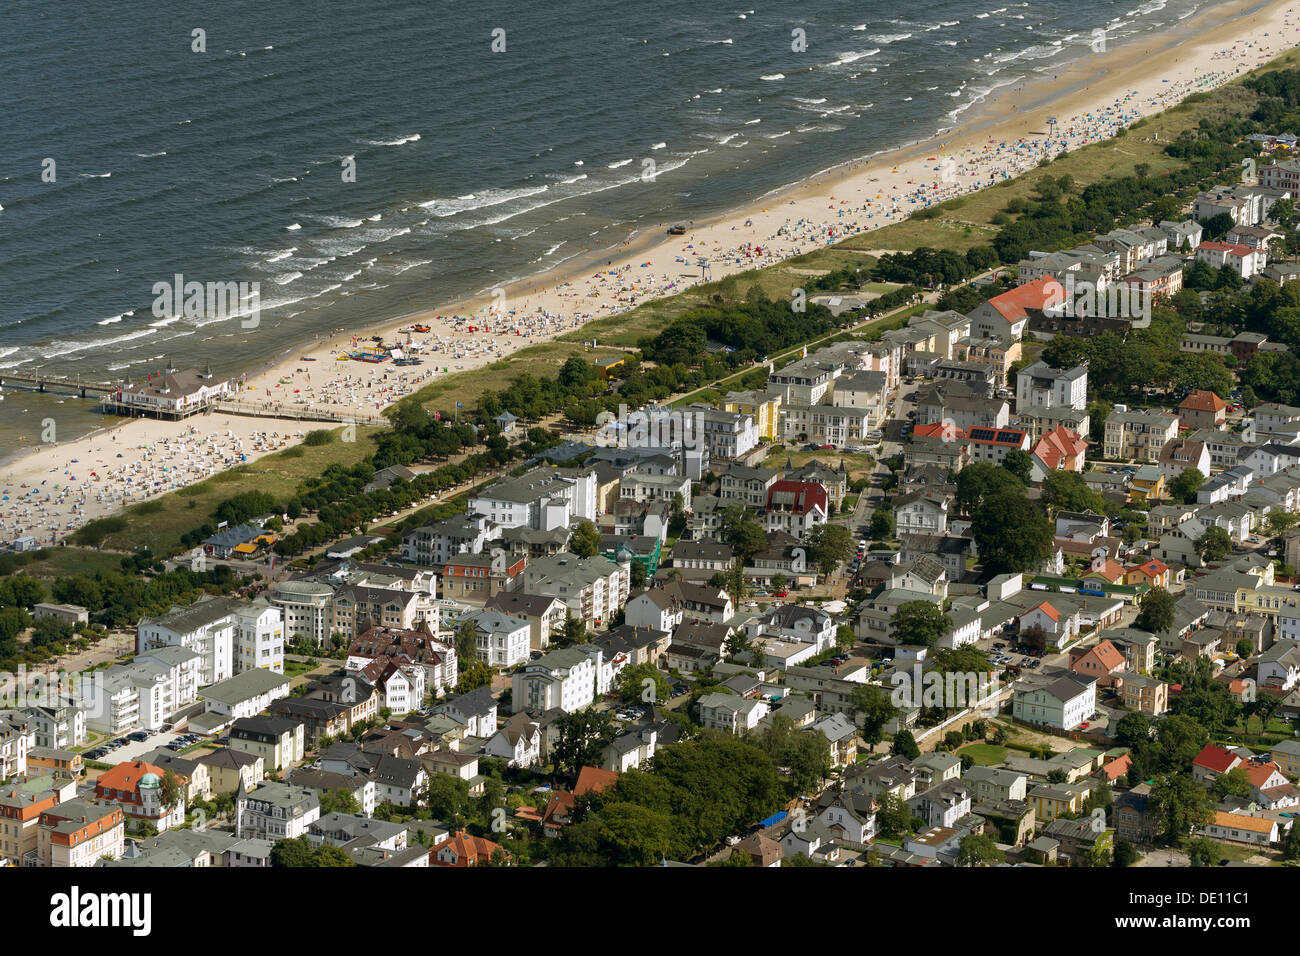 Vue aérienne, port d'Heringsdorf, sur la plage Banque D'Images